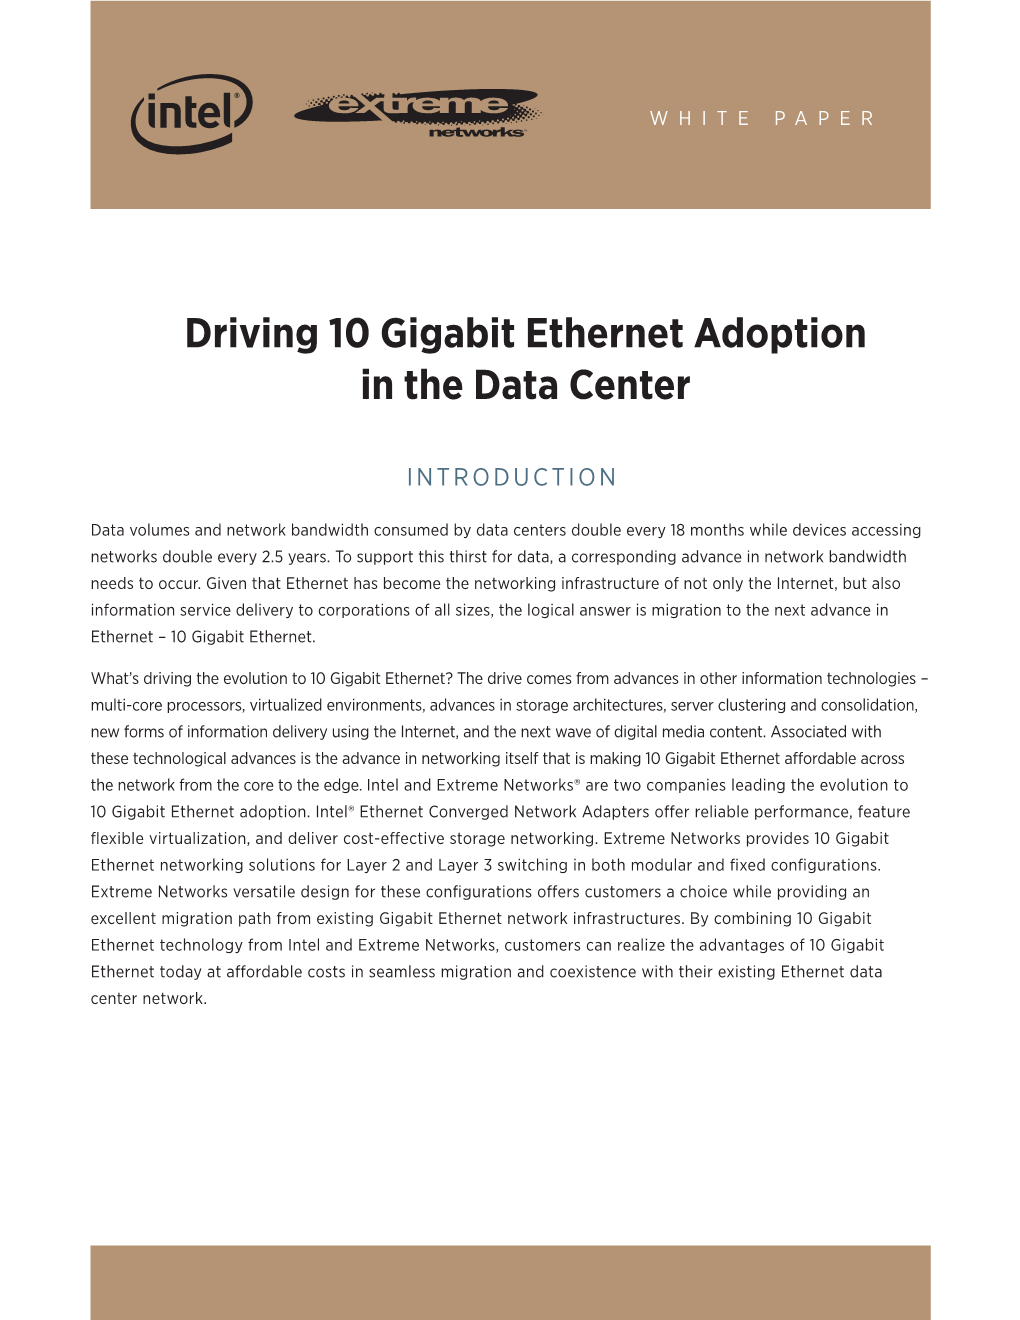 Driving 10 Gigabit Ethernet Adoption in the Data Center